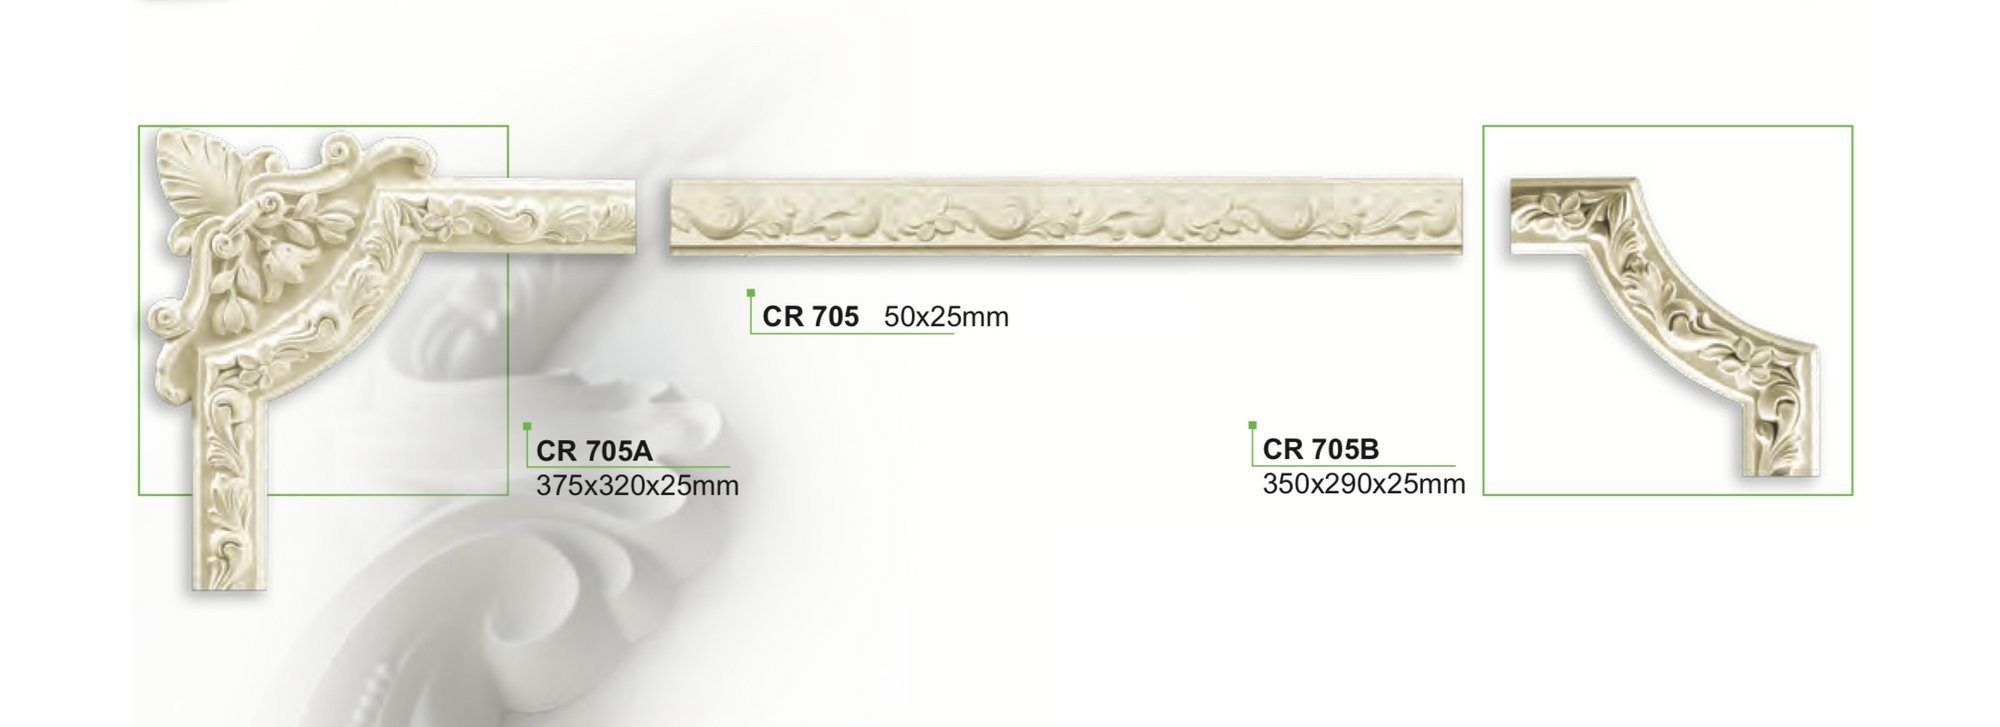 Flachleiste, vorgrundiert Zierprofil weißes Deckenumrandung & stoßfest, CR705 50x25mm - hart - Decor Wandleiste aus und CR705, Grand Meter Stuckleiste PU Wand- / 2